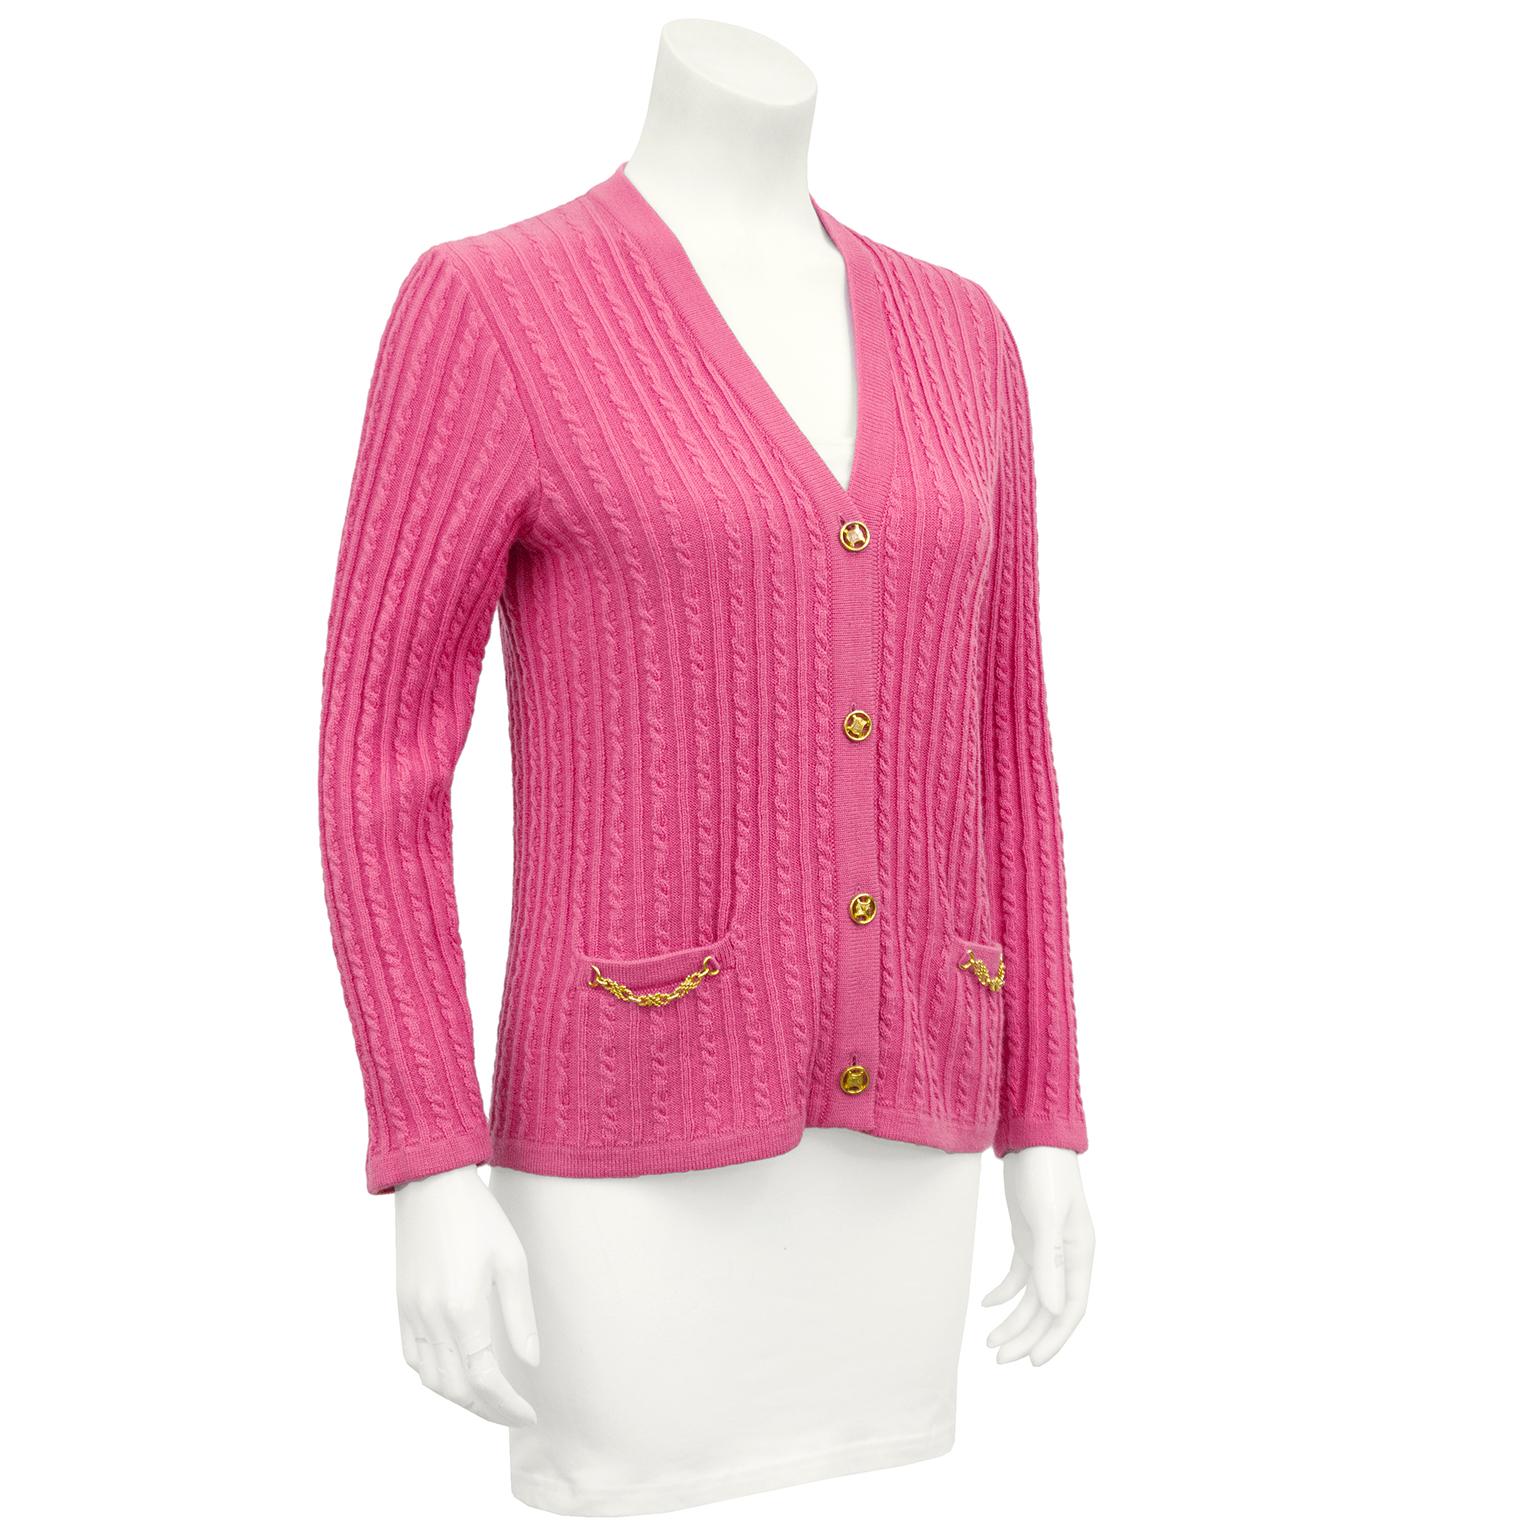 Hübsche rosa Strickjacke von Celine aus den 1970er Jahren. Zopfstrick aus Wolle mit goldenen Knöpfen mit Celine-Logo und goldenen Kettendetails an den flachen Taschen. In ausgezeichnetem Vintage-Zustand, markiert FR 38. Passt zu unserem Celine